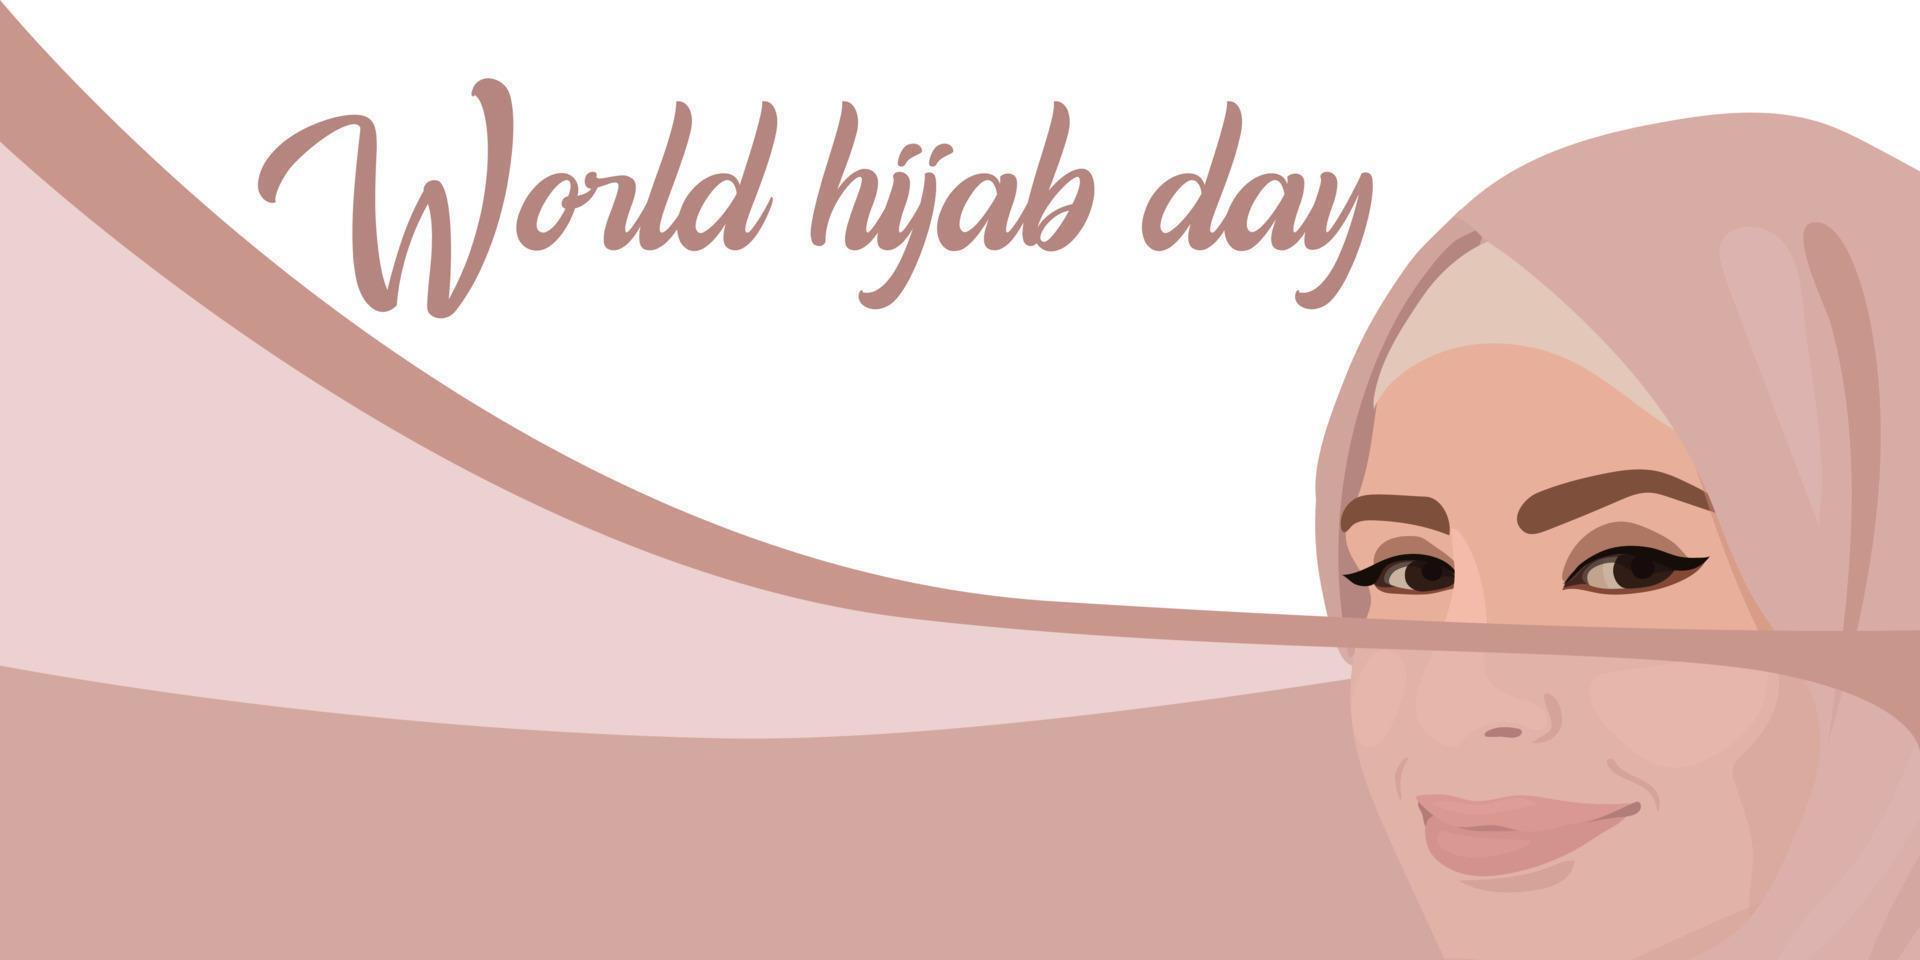 wereld hijab dag. een moslim vrouw in een hijaab. Arabisch vrouw. 1 februari. gelukkig wereld vrouwen dag in hijaab. vector illustratie van een meisje in een hoofddoek. de banier